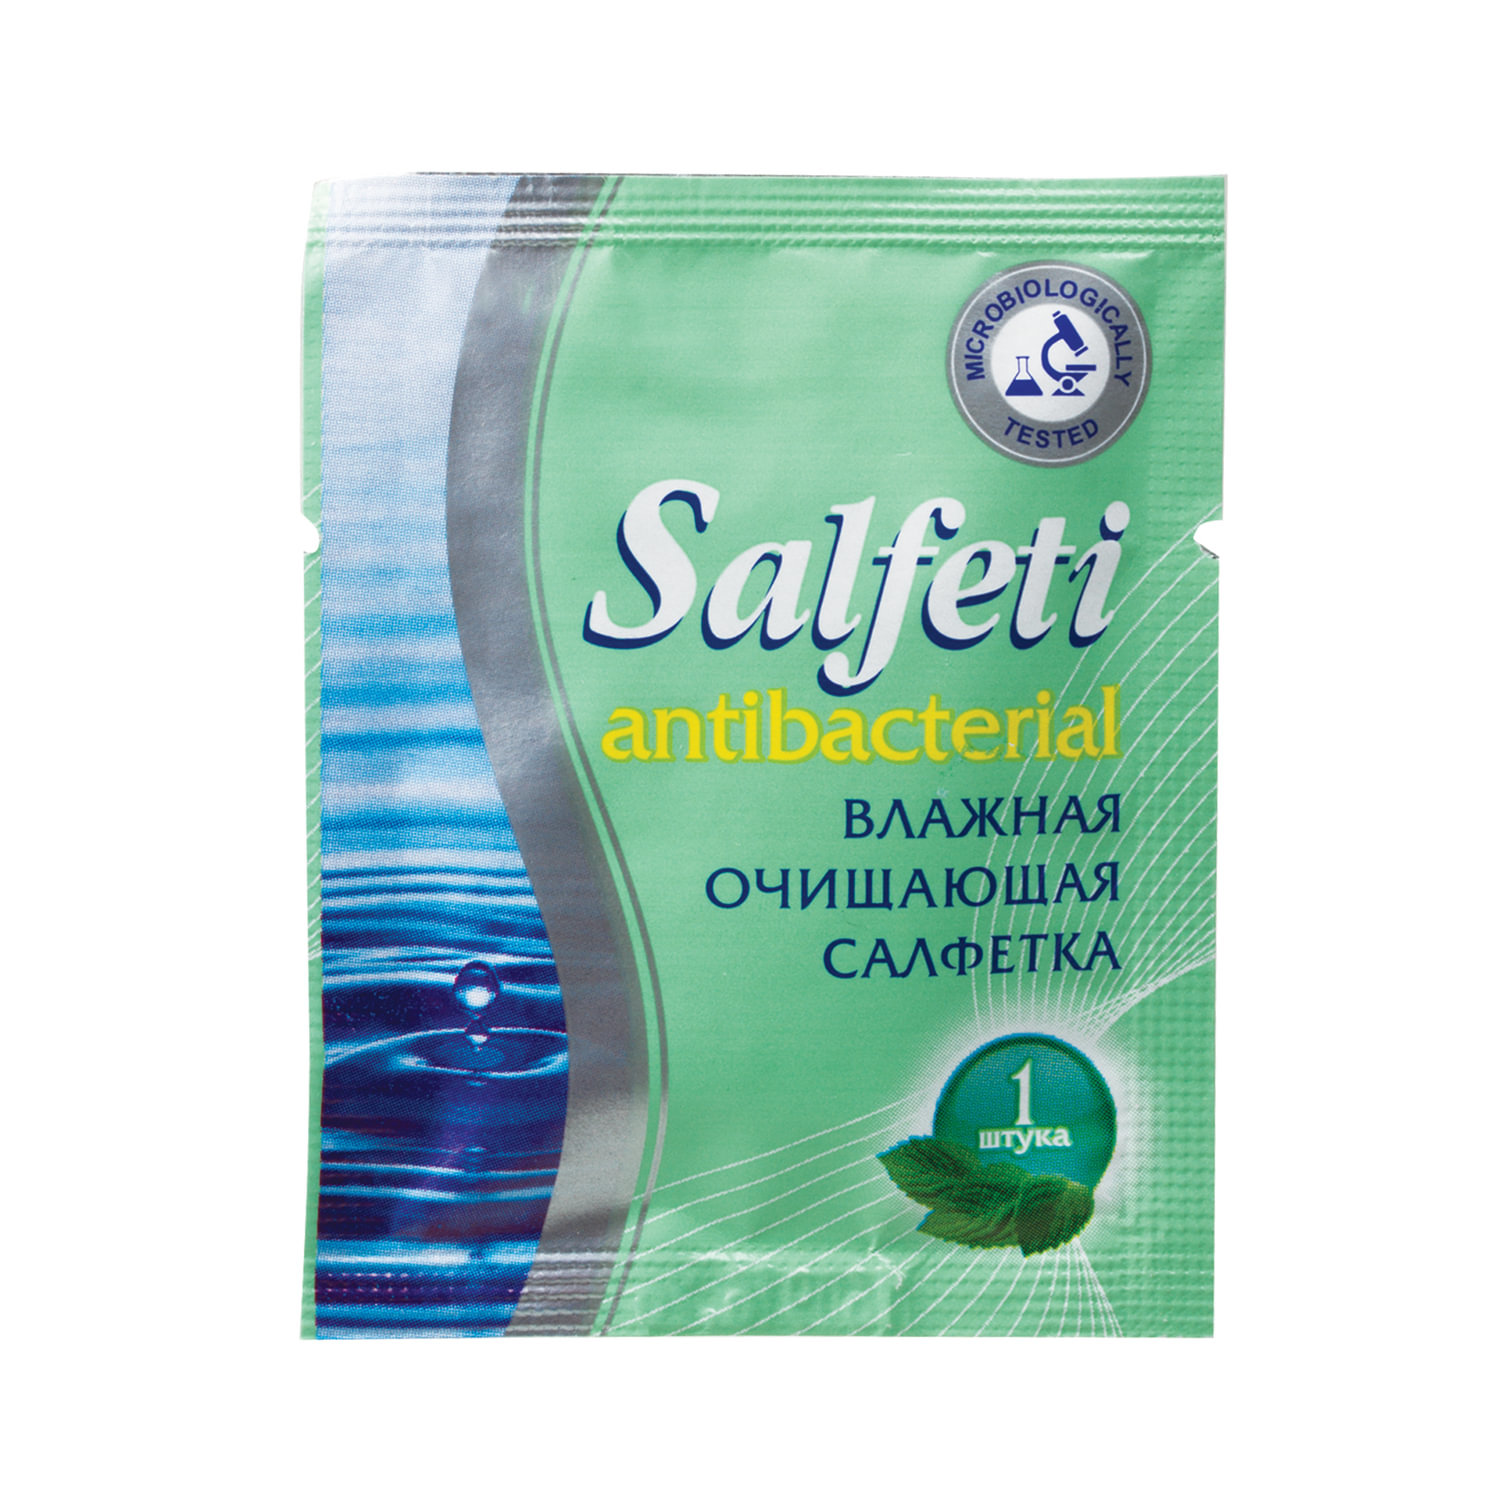 Салфетка влажная SALFETI антибактериальная, 14х18см, в индивидуальной упаковке (саше) (128022)